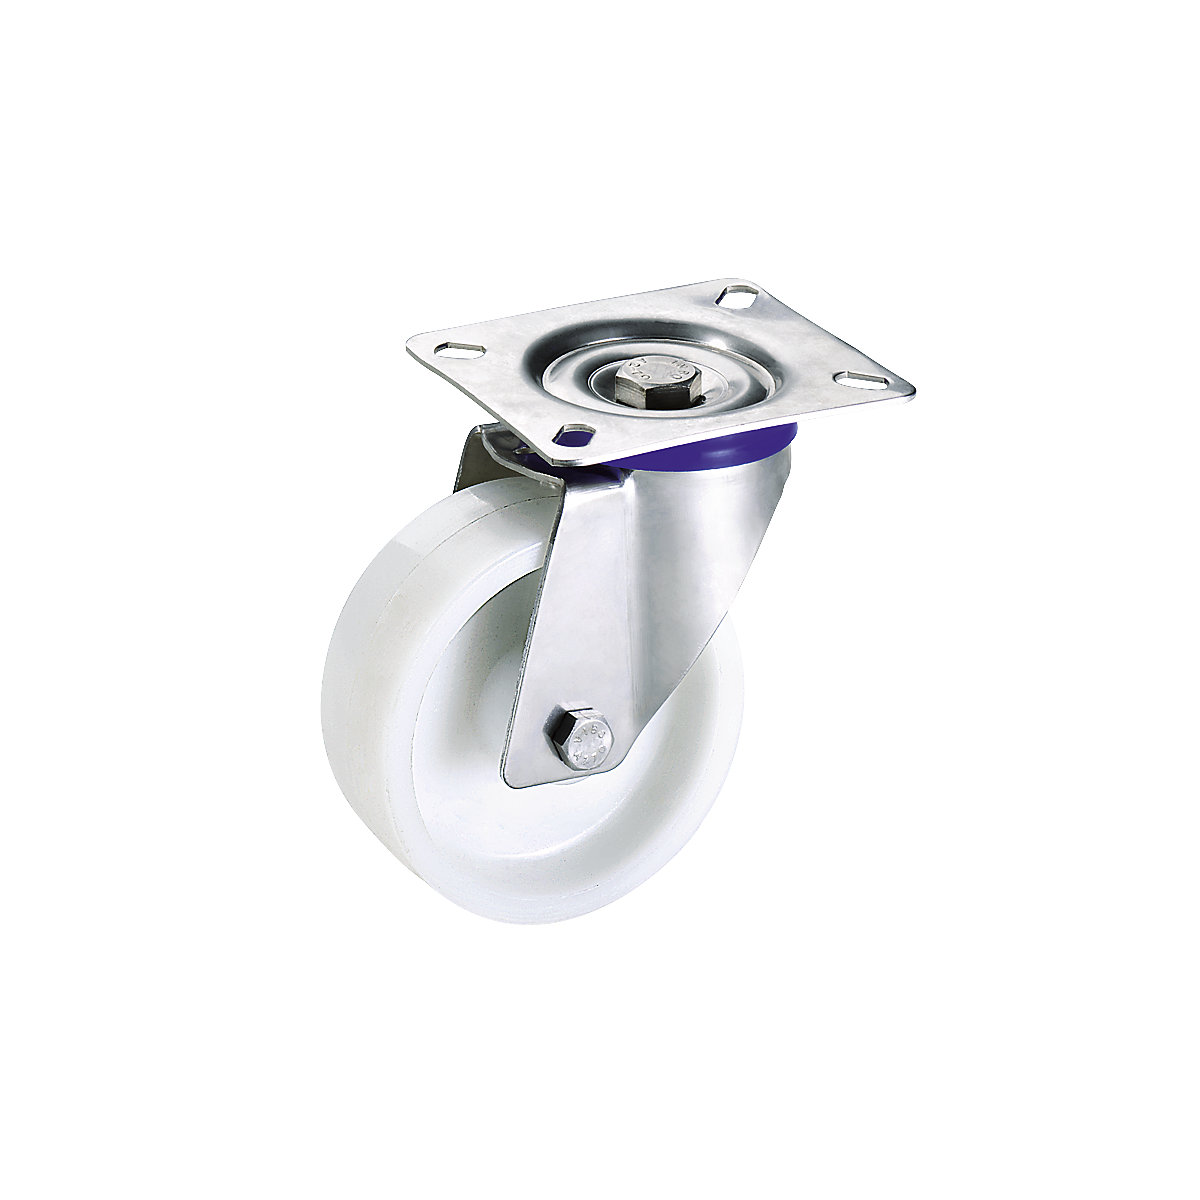 Poliamidno kolo, ohišje iz nerjavnega jekla – Proroll, Ø x širina kolesa 100 x 32 mm, vrtljivo kolo-4